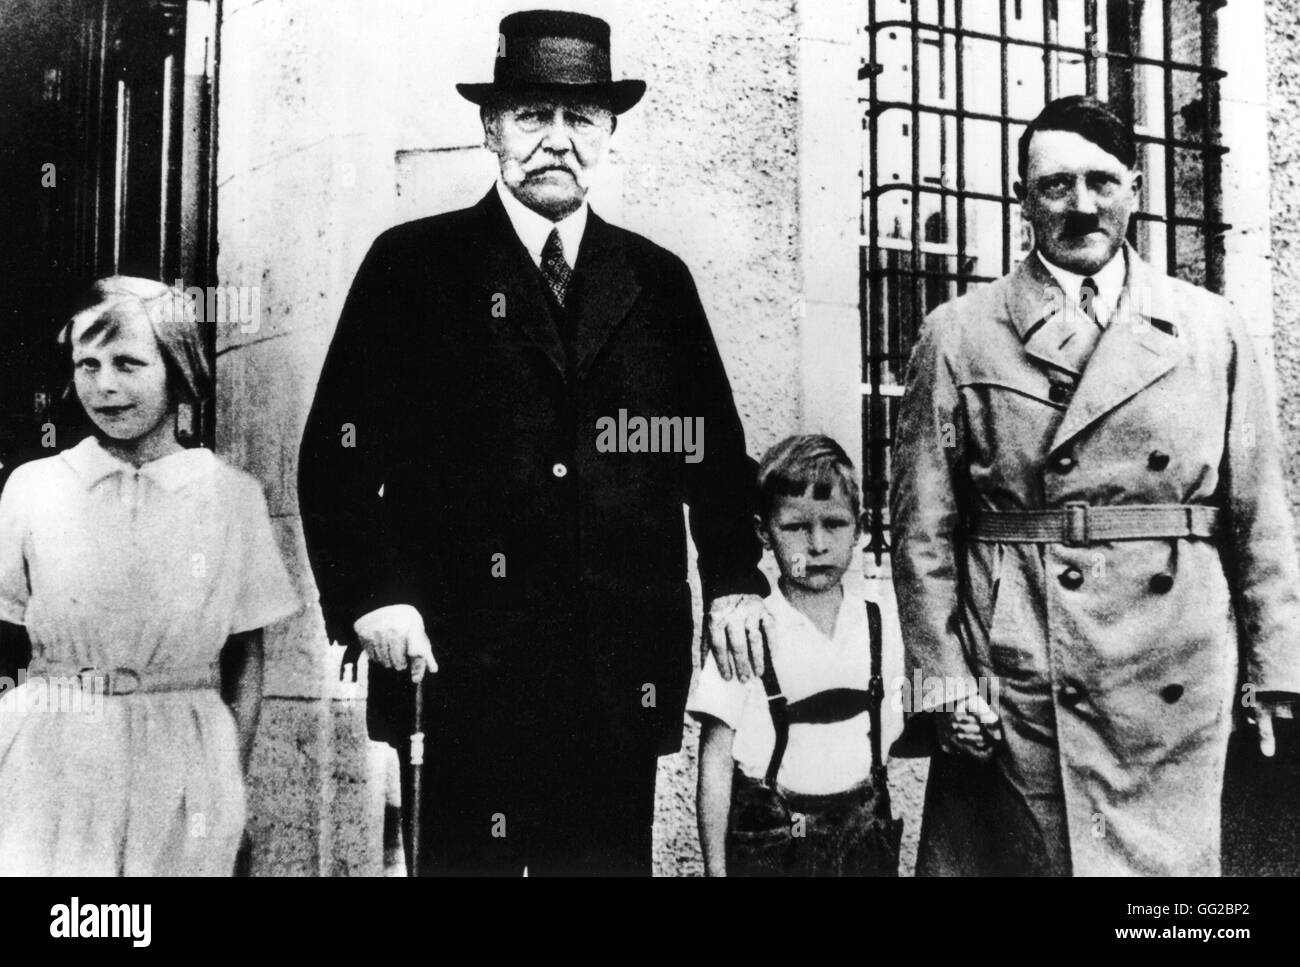 Adolf Hitler, invité par le président Hindenburg, en face du château de Neudeck -1933 20e siècle Allemagne Banque D'Images